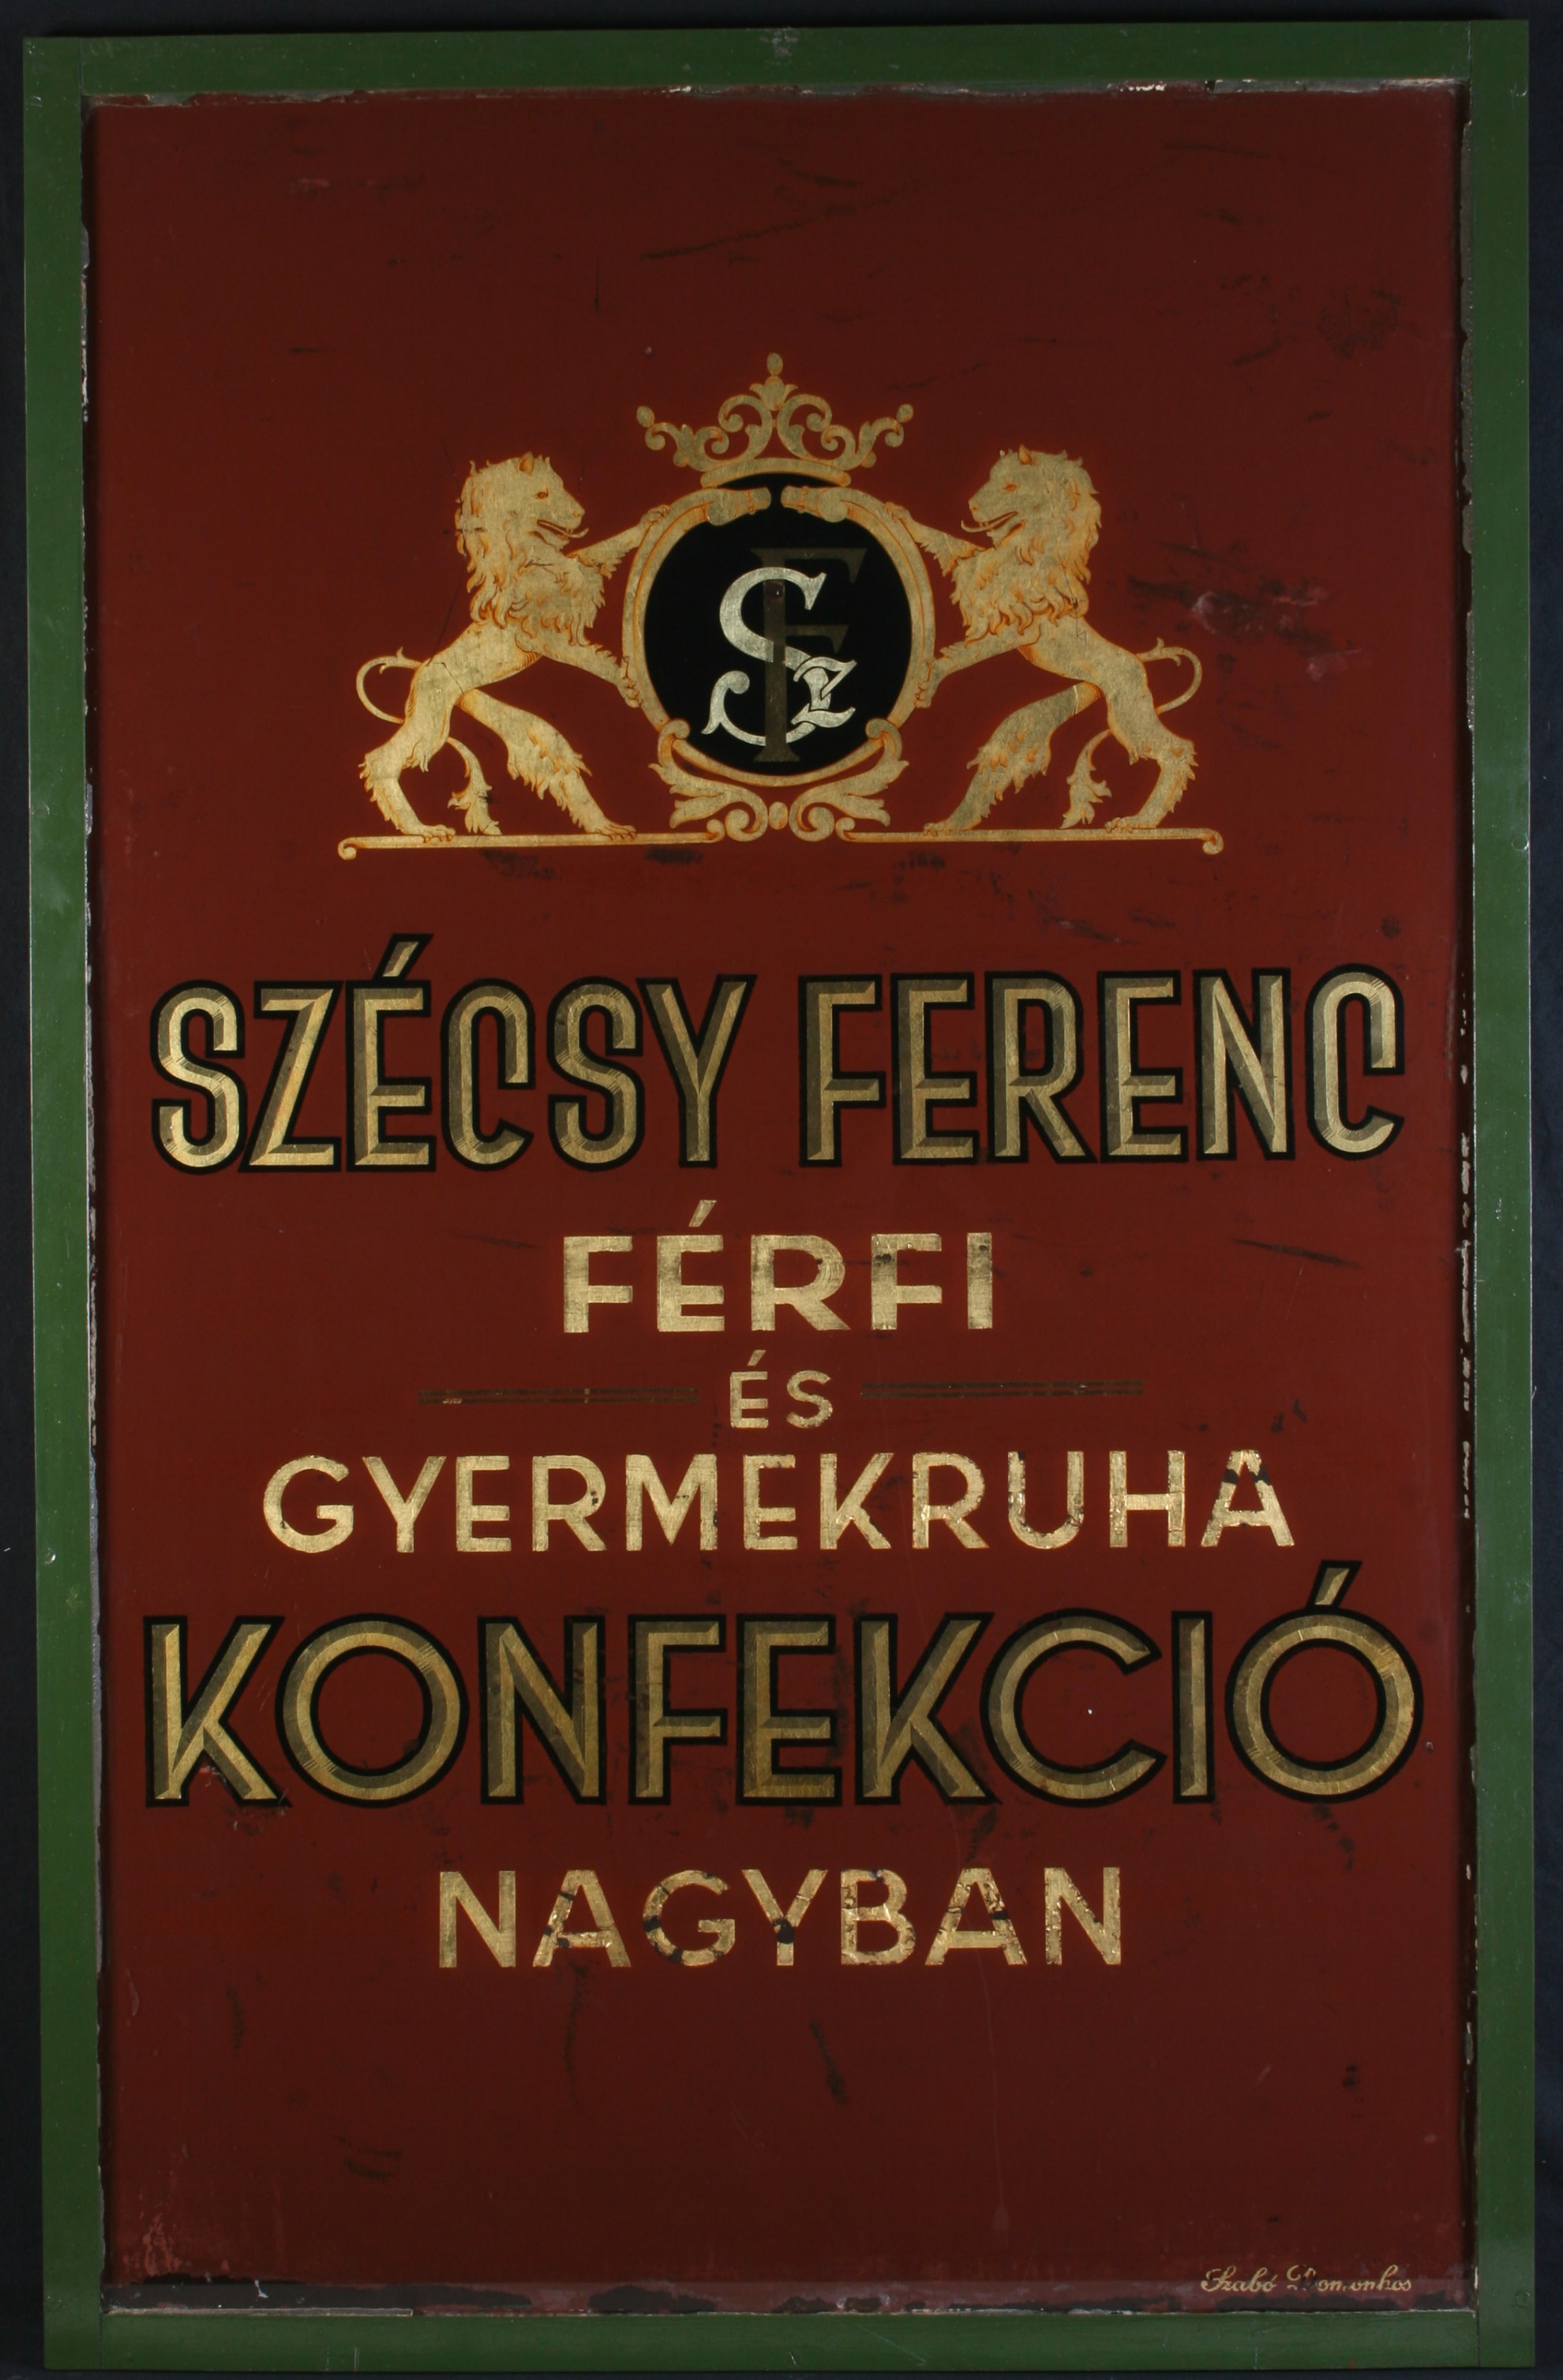 Szécsy Ferenc férfi és gyermekruha konfekció cégtáblája (Magyar Kereskedelmi és Vendéglátóipari Múzeum CC BY-NC-SA)